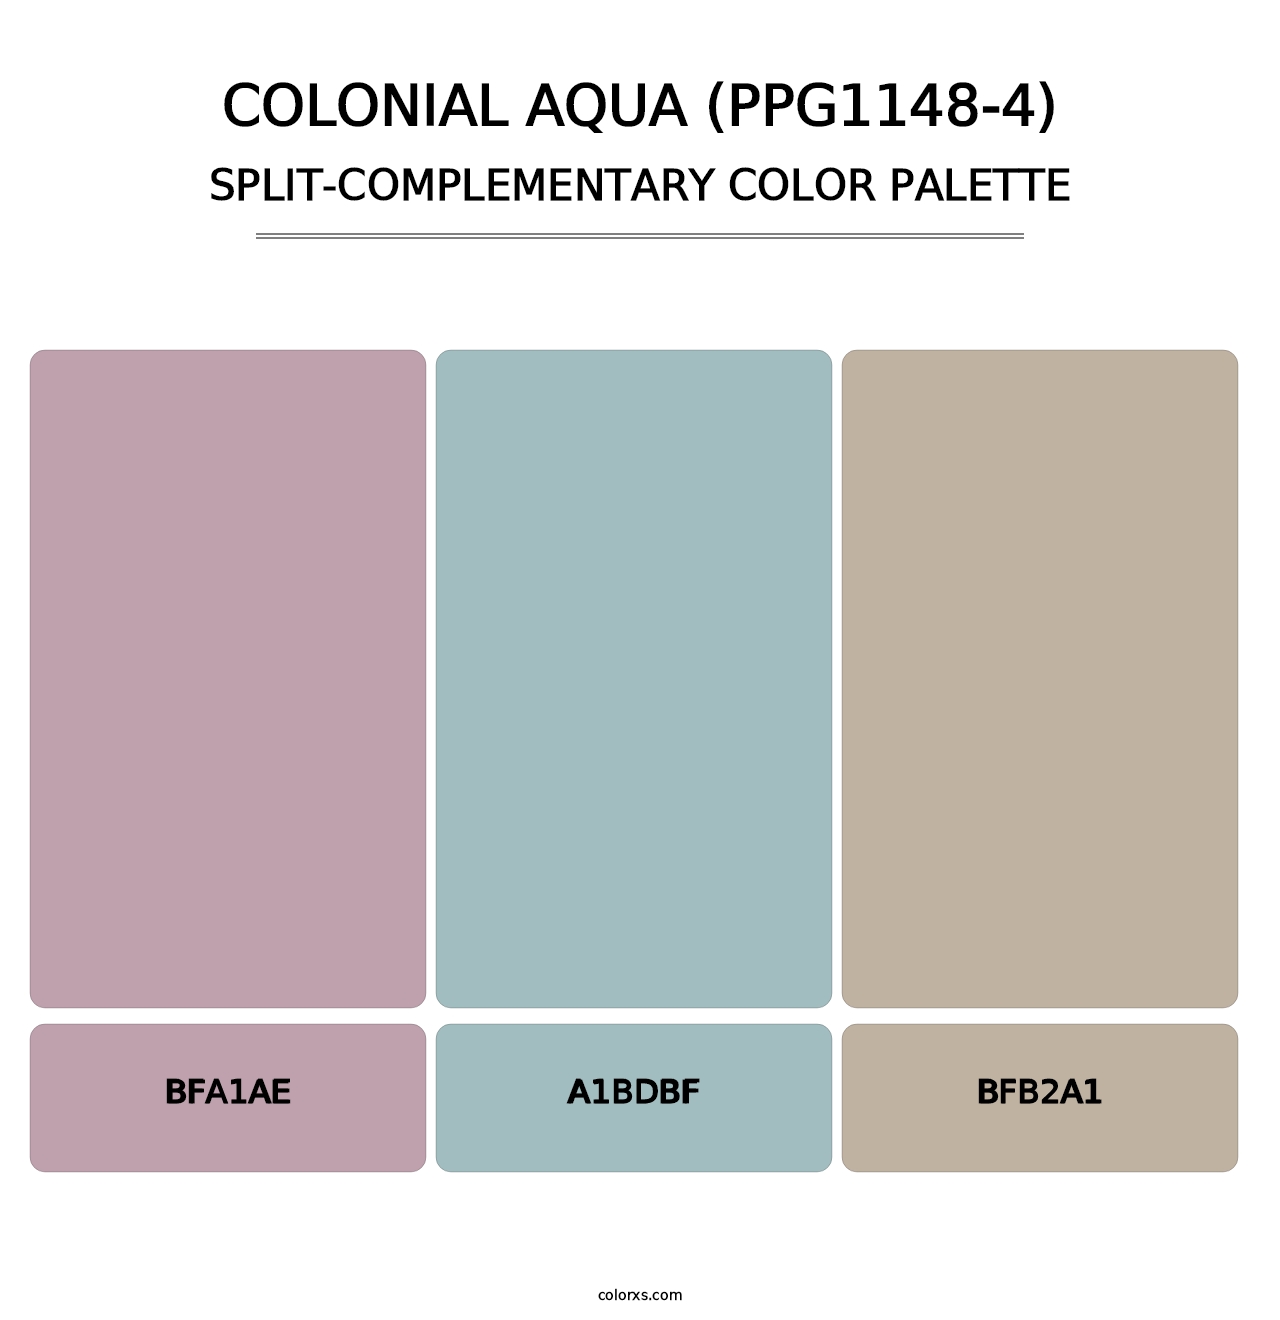 Colonial Aqua (PPG1148-4) - Split-Complementary Color Palette